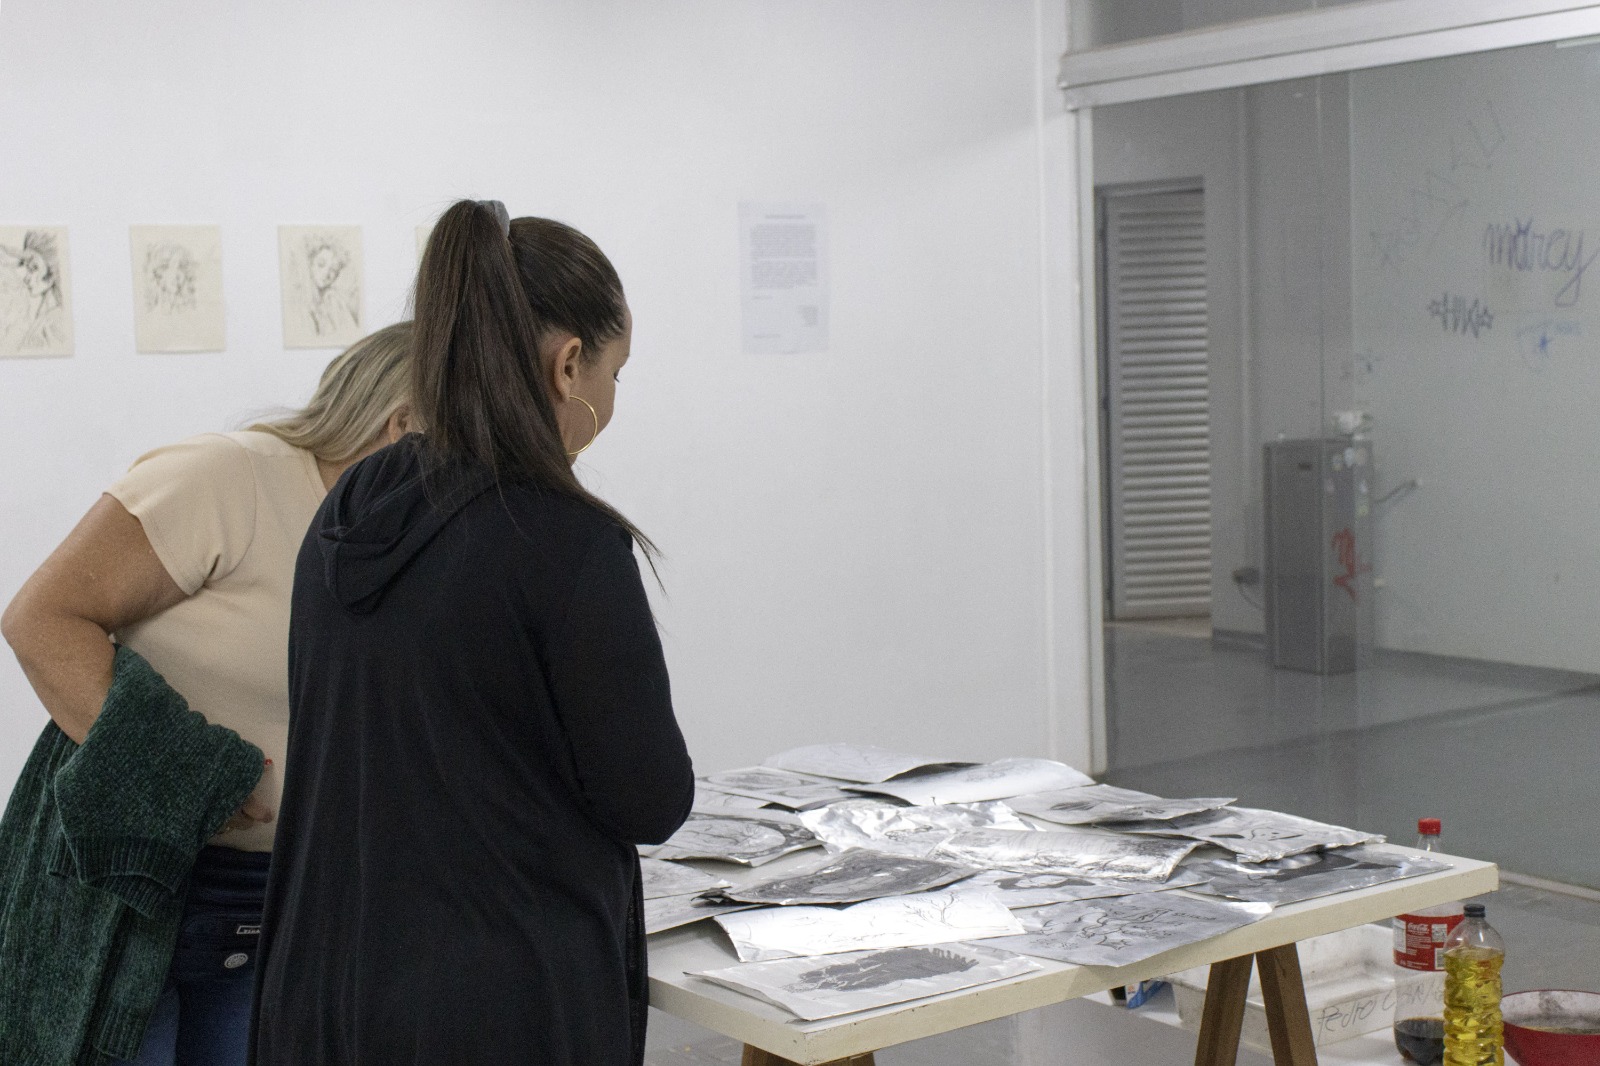 Na imagem, aparecem duas pessoas observando as obras da exposição